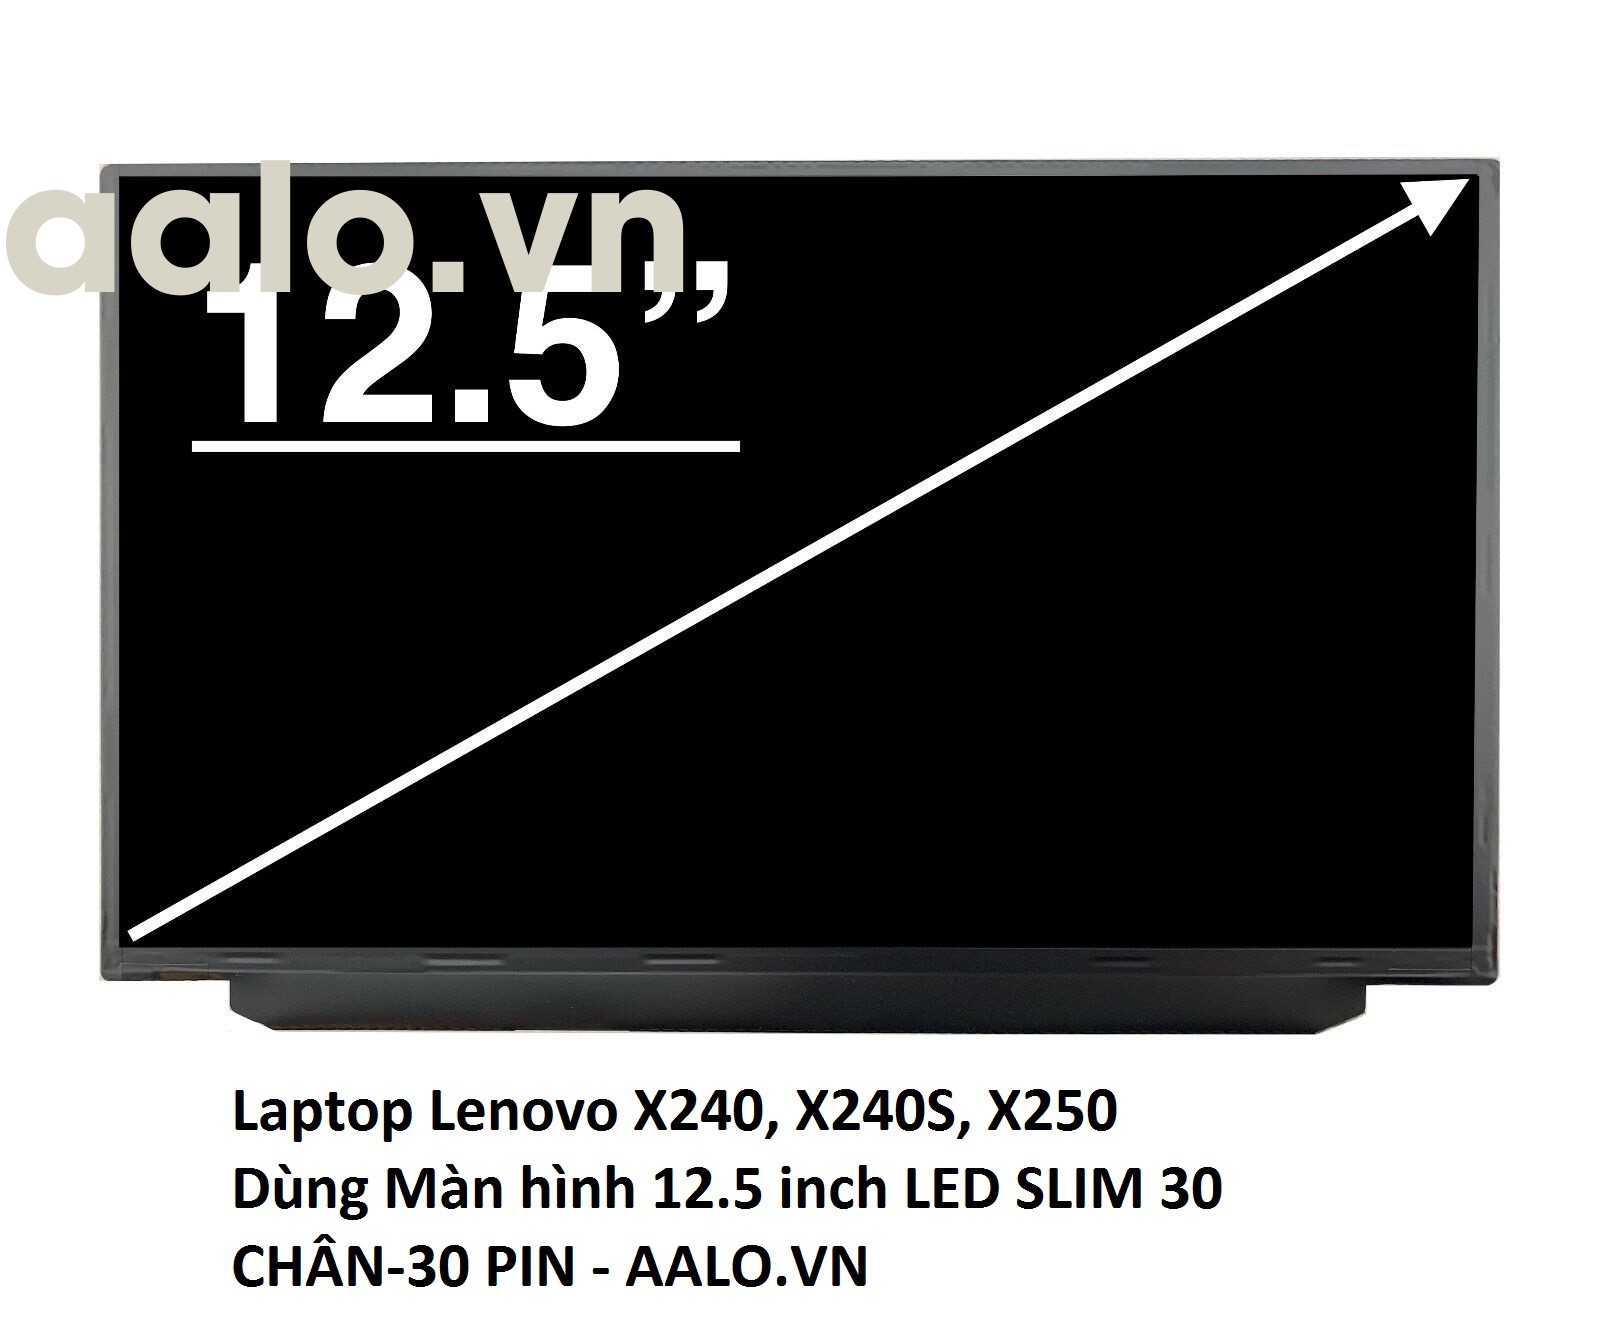 Màn hình Laptop Lenovo X240, X240S, X250